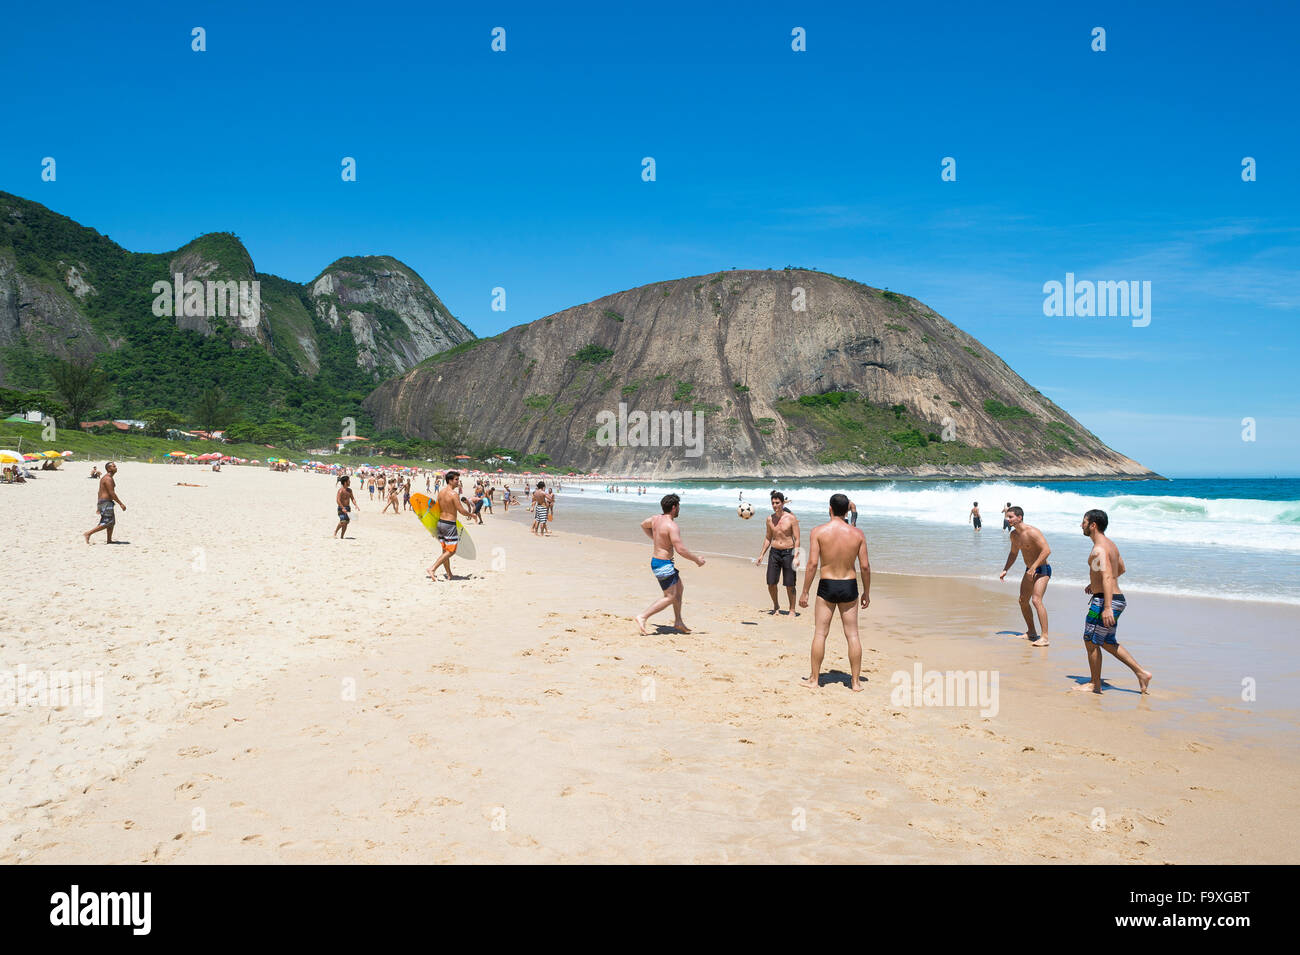 RIO DE JANEIRO, BRAZIL - OCTOBER 31, 2015: Young Brazilians play beach football on the shore of Itacoatiara Beach. Stock Photo